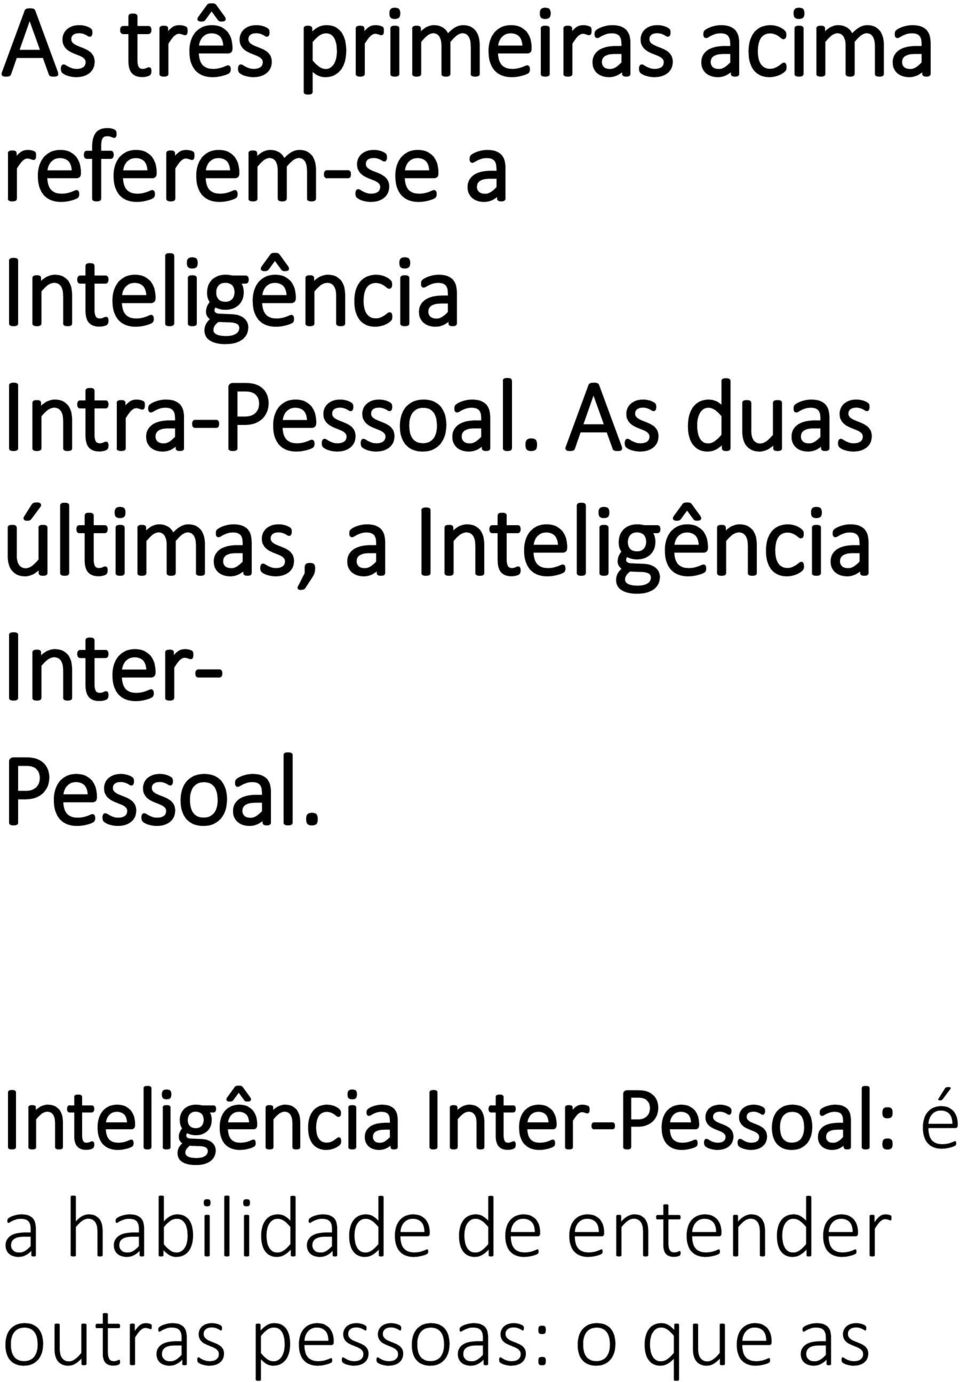 As duas últimas, a Inteligência Inter- Pessoal.